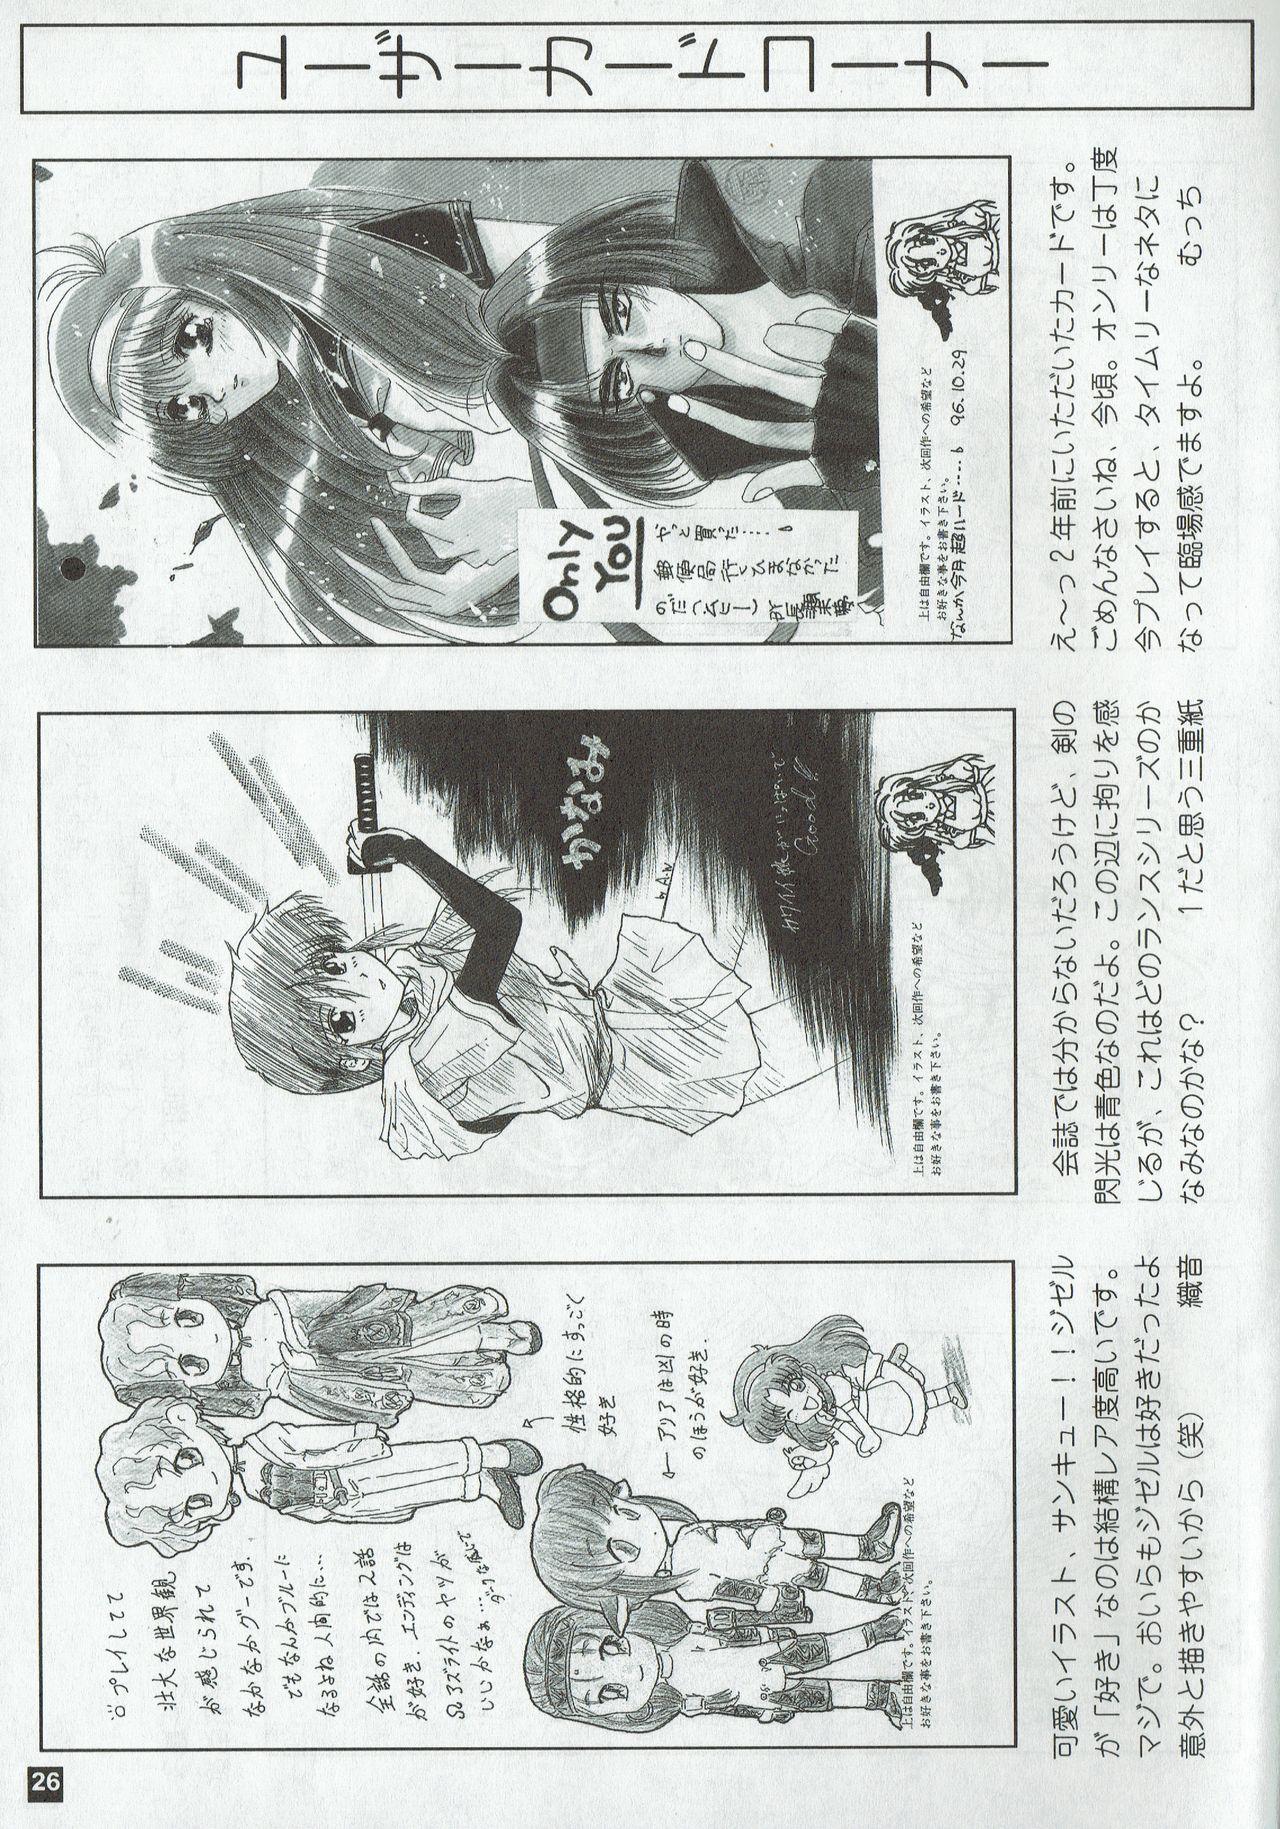 Arisu no Denchi Bakudan Vol. 02 25